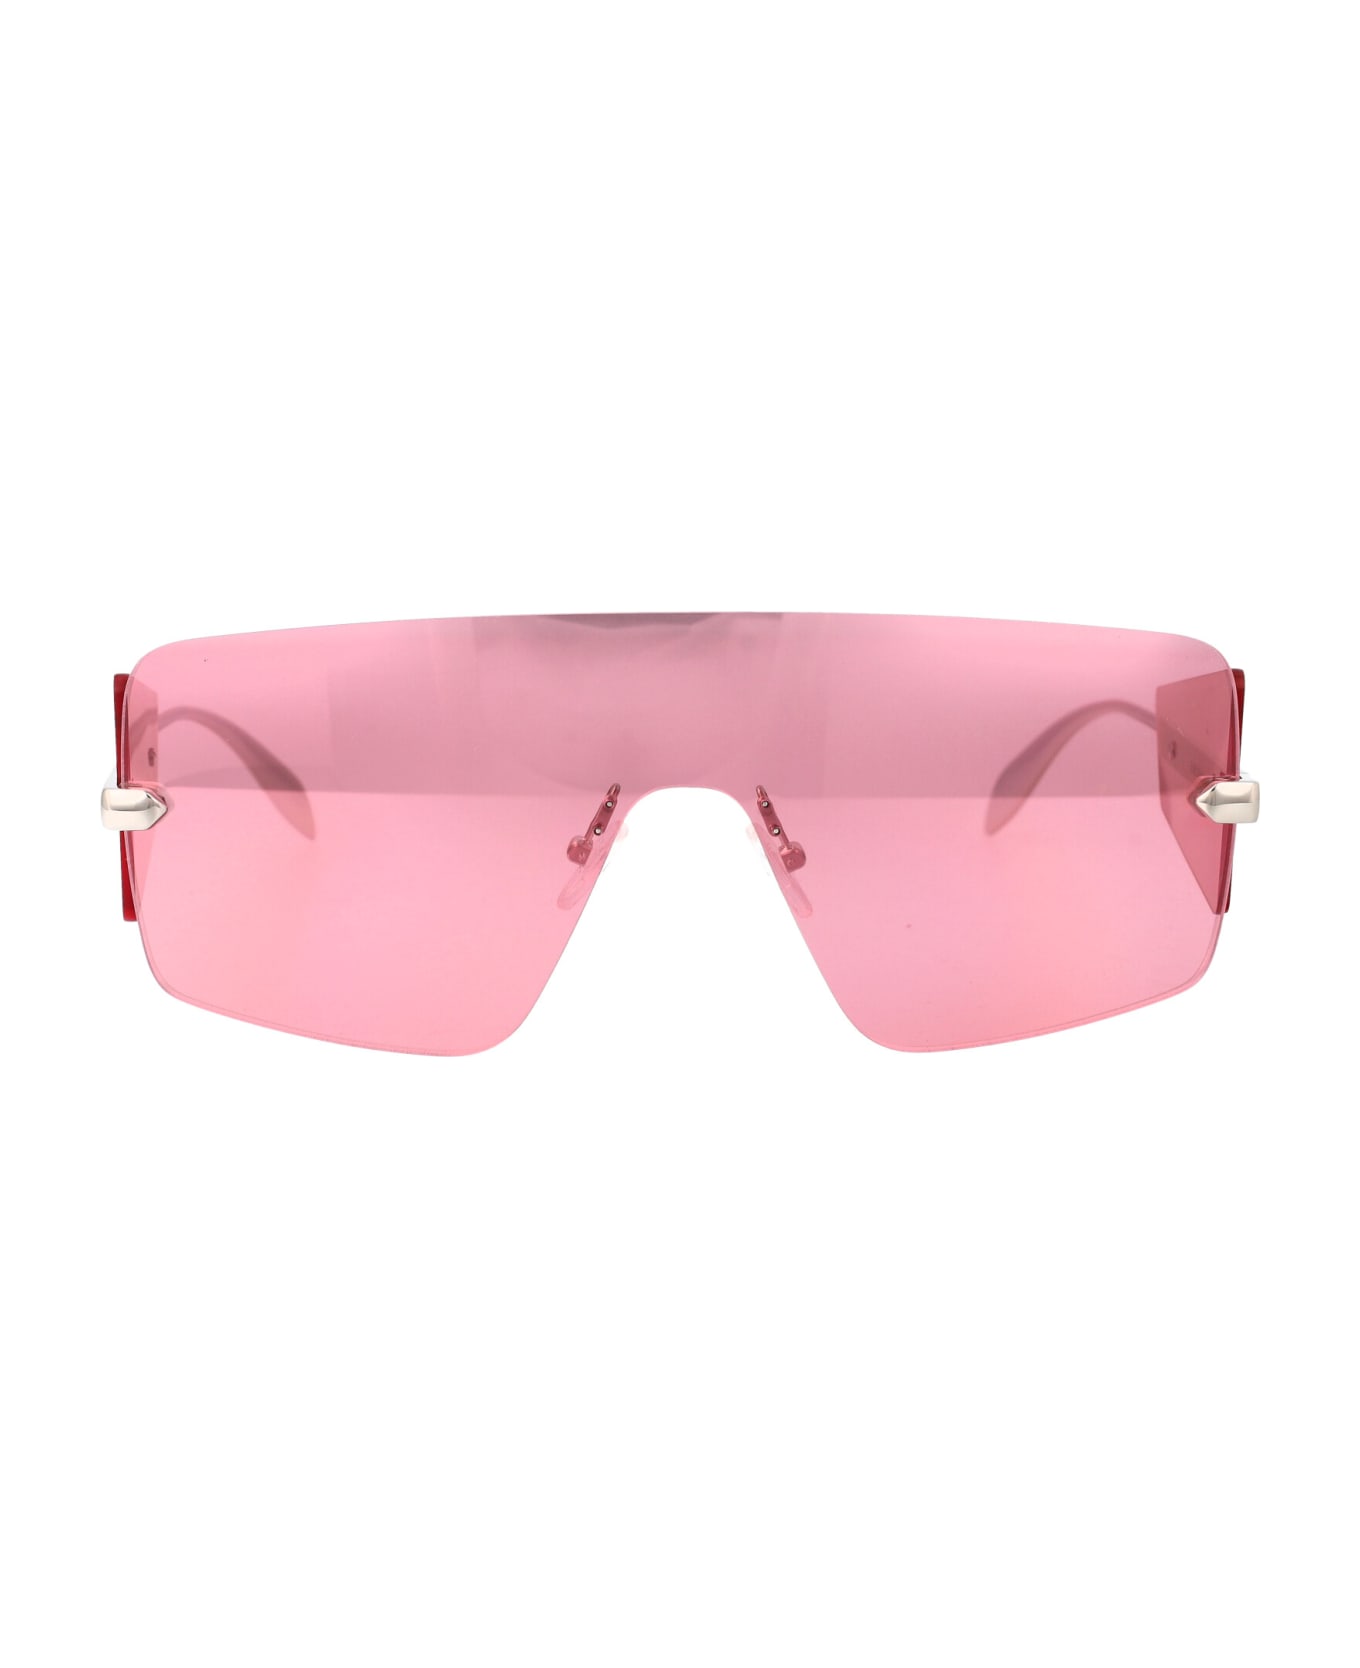 Alexander McQueen Eyewear Am0460s Sunglasses - 004 SILVER SILVER PINK